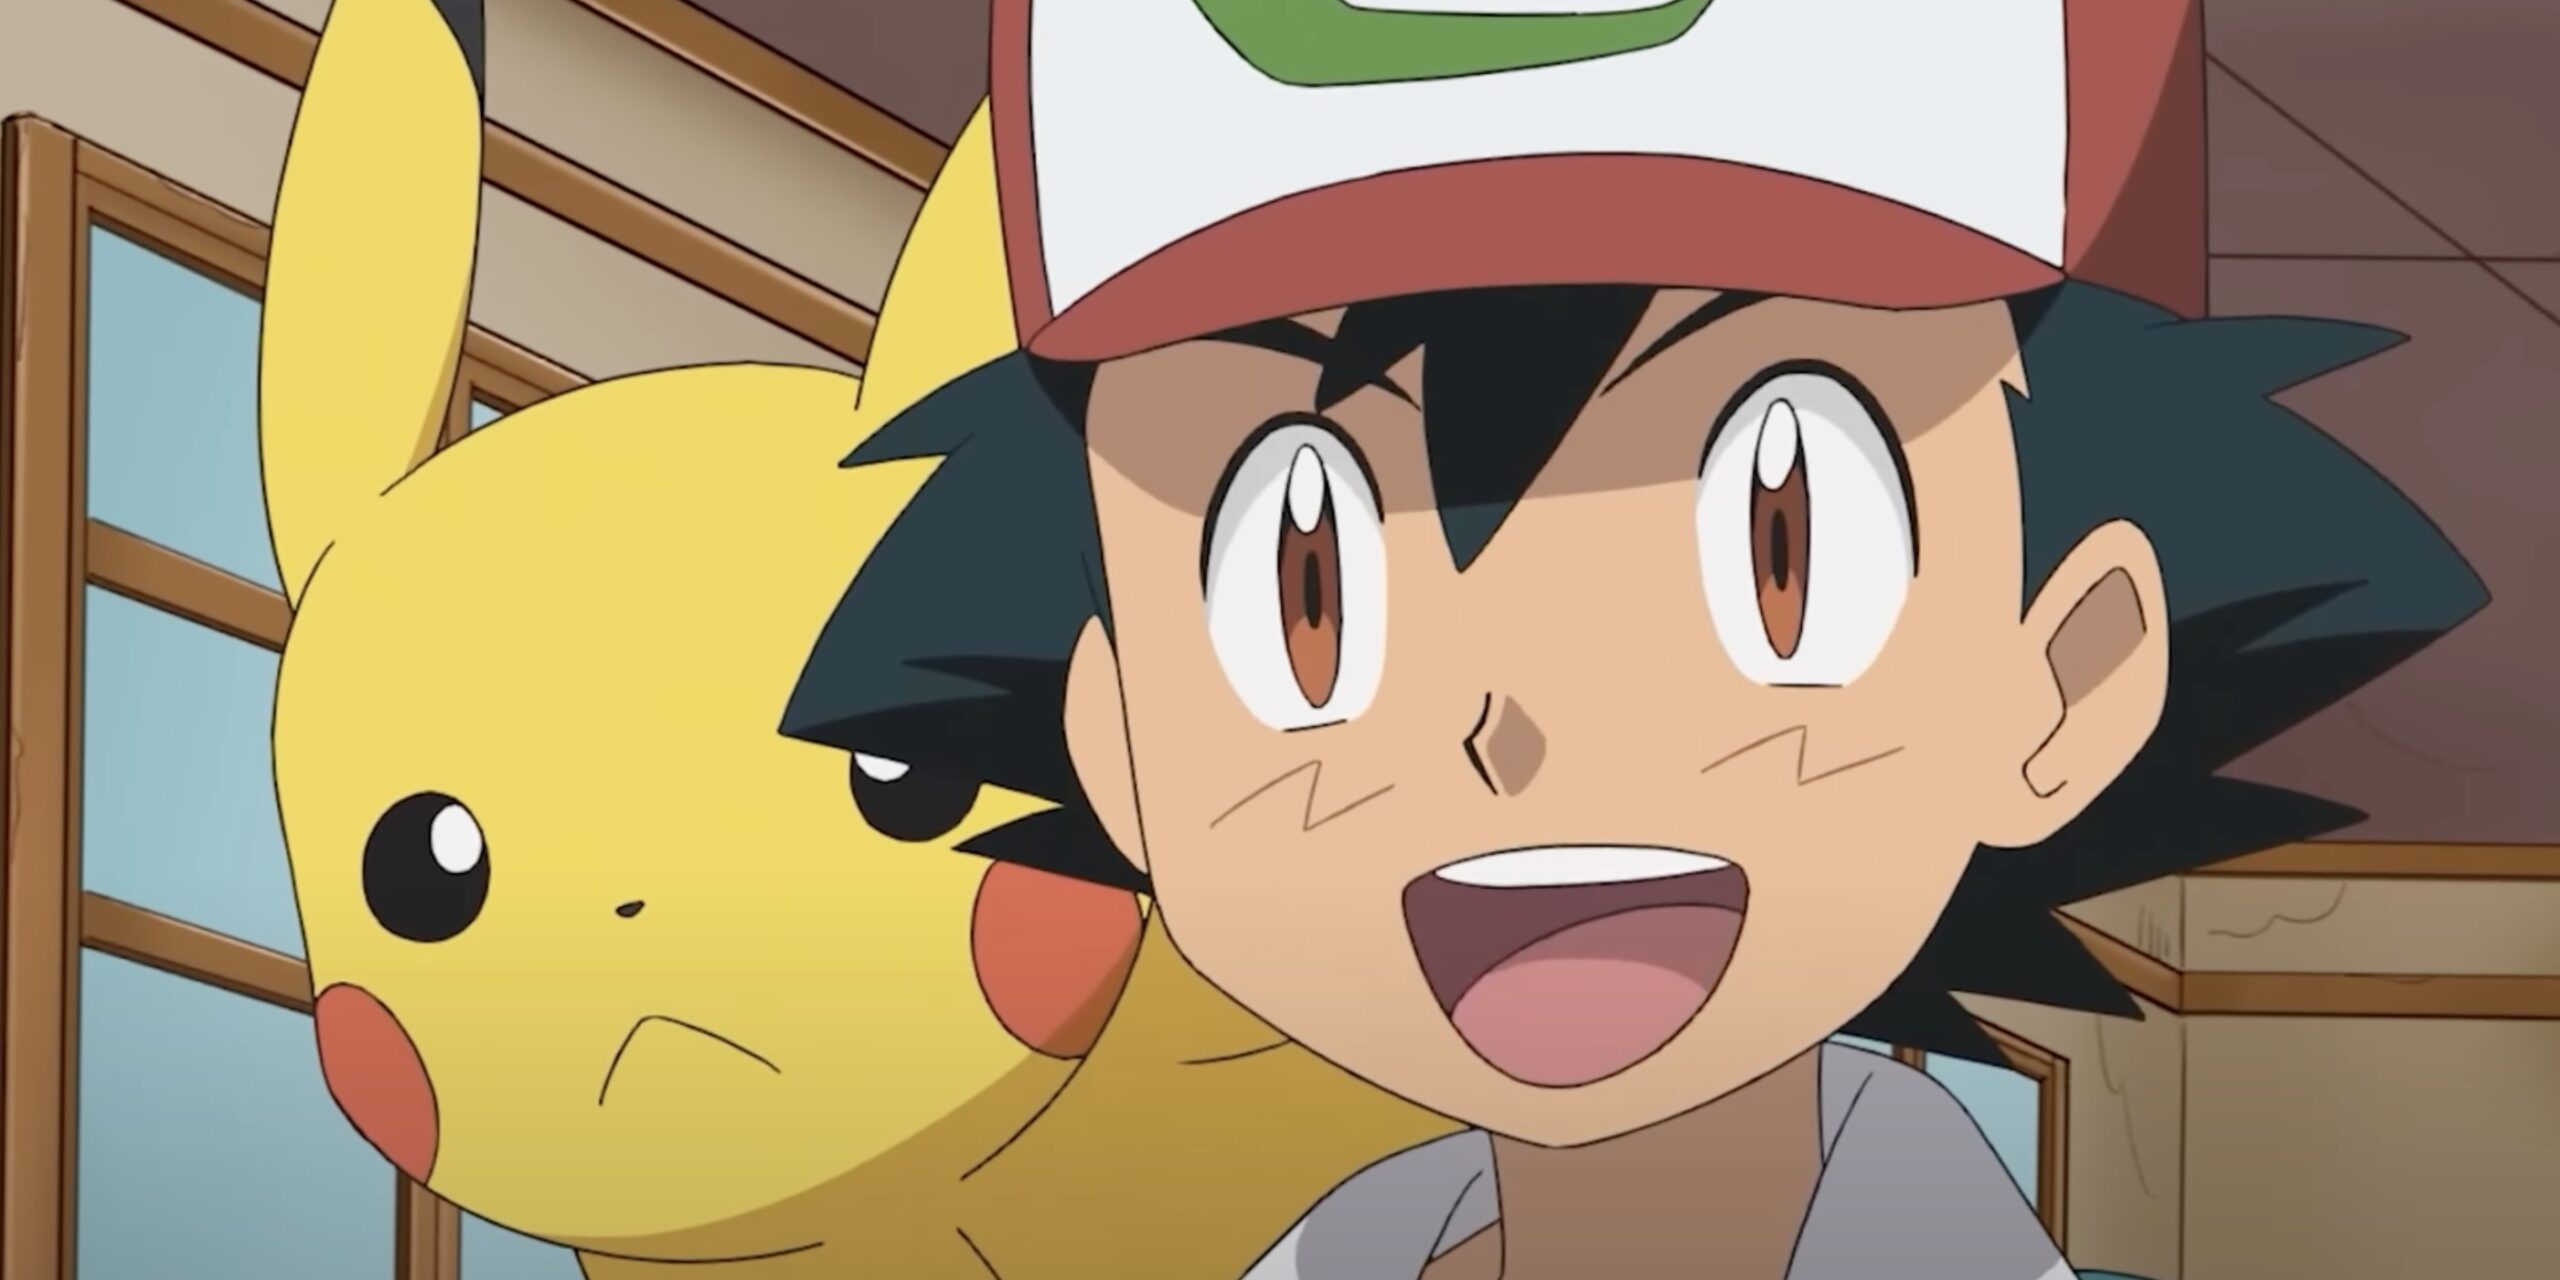 Pokémon Anime Reveals Ash's Dad, But with a Surprising Twist